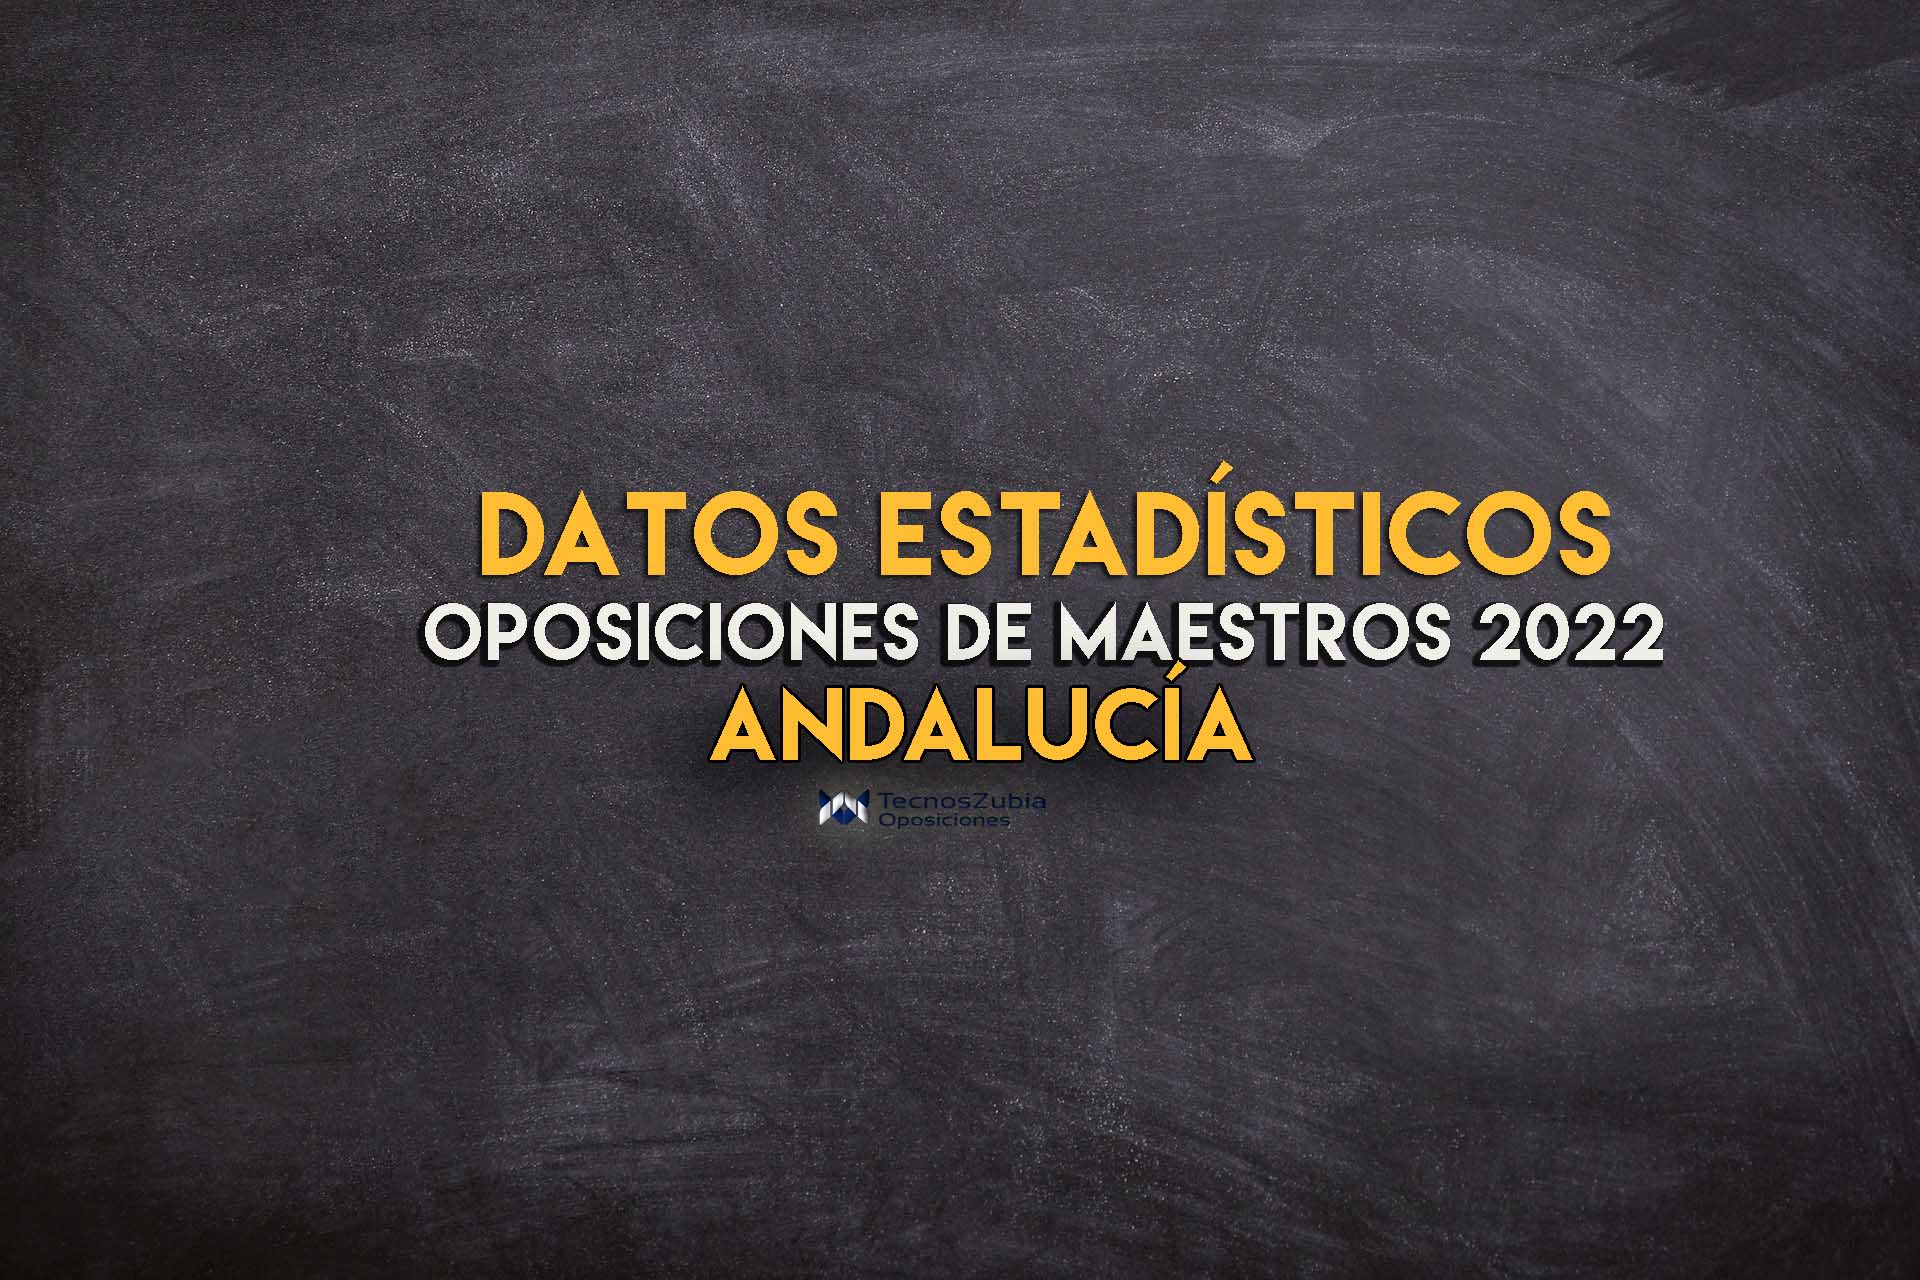 Datos estadísticos Andalucia oposiciones maestros